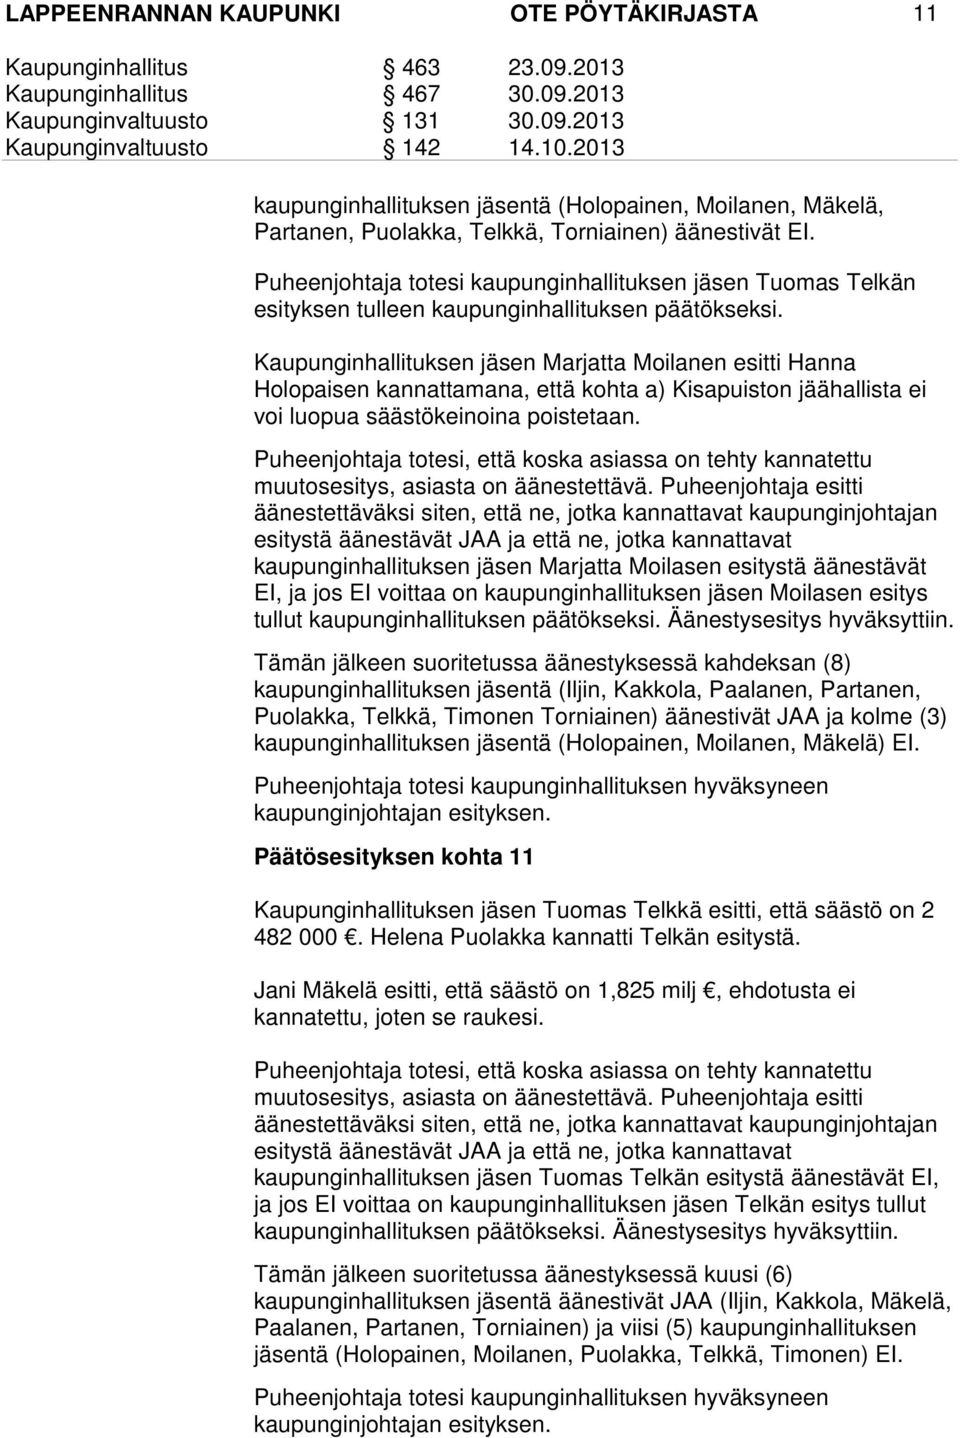 Kaupunginhallituksen jäsen Marjatta Moilanen esitti Hanna Holopaisen kannattamana, että kohta a) Kisapuiston jäähallista ei voi luopua säästökeinoina poistetaan.